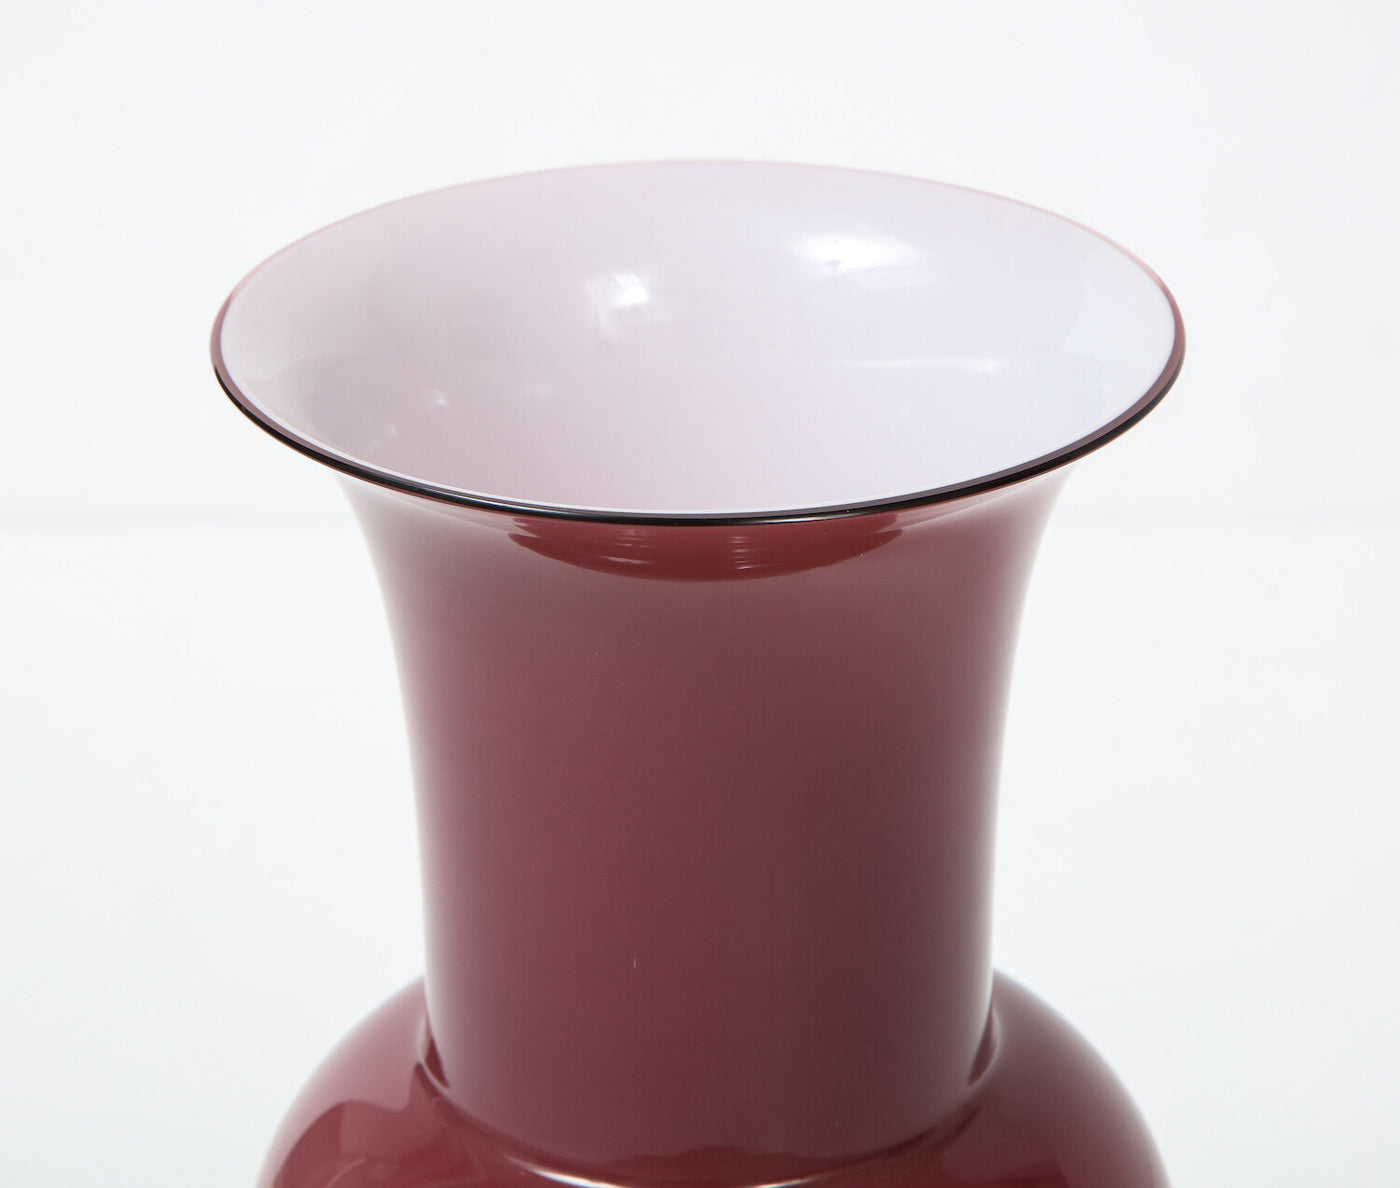 “Incamiciato” Vase by Tomaso Buzzi for Venini